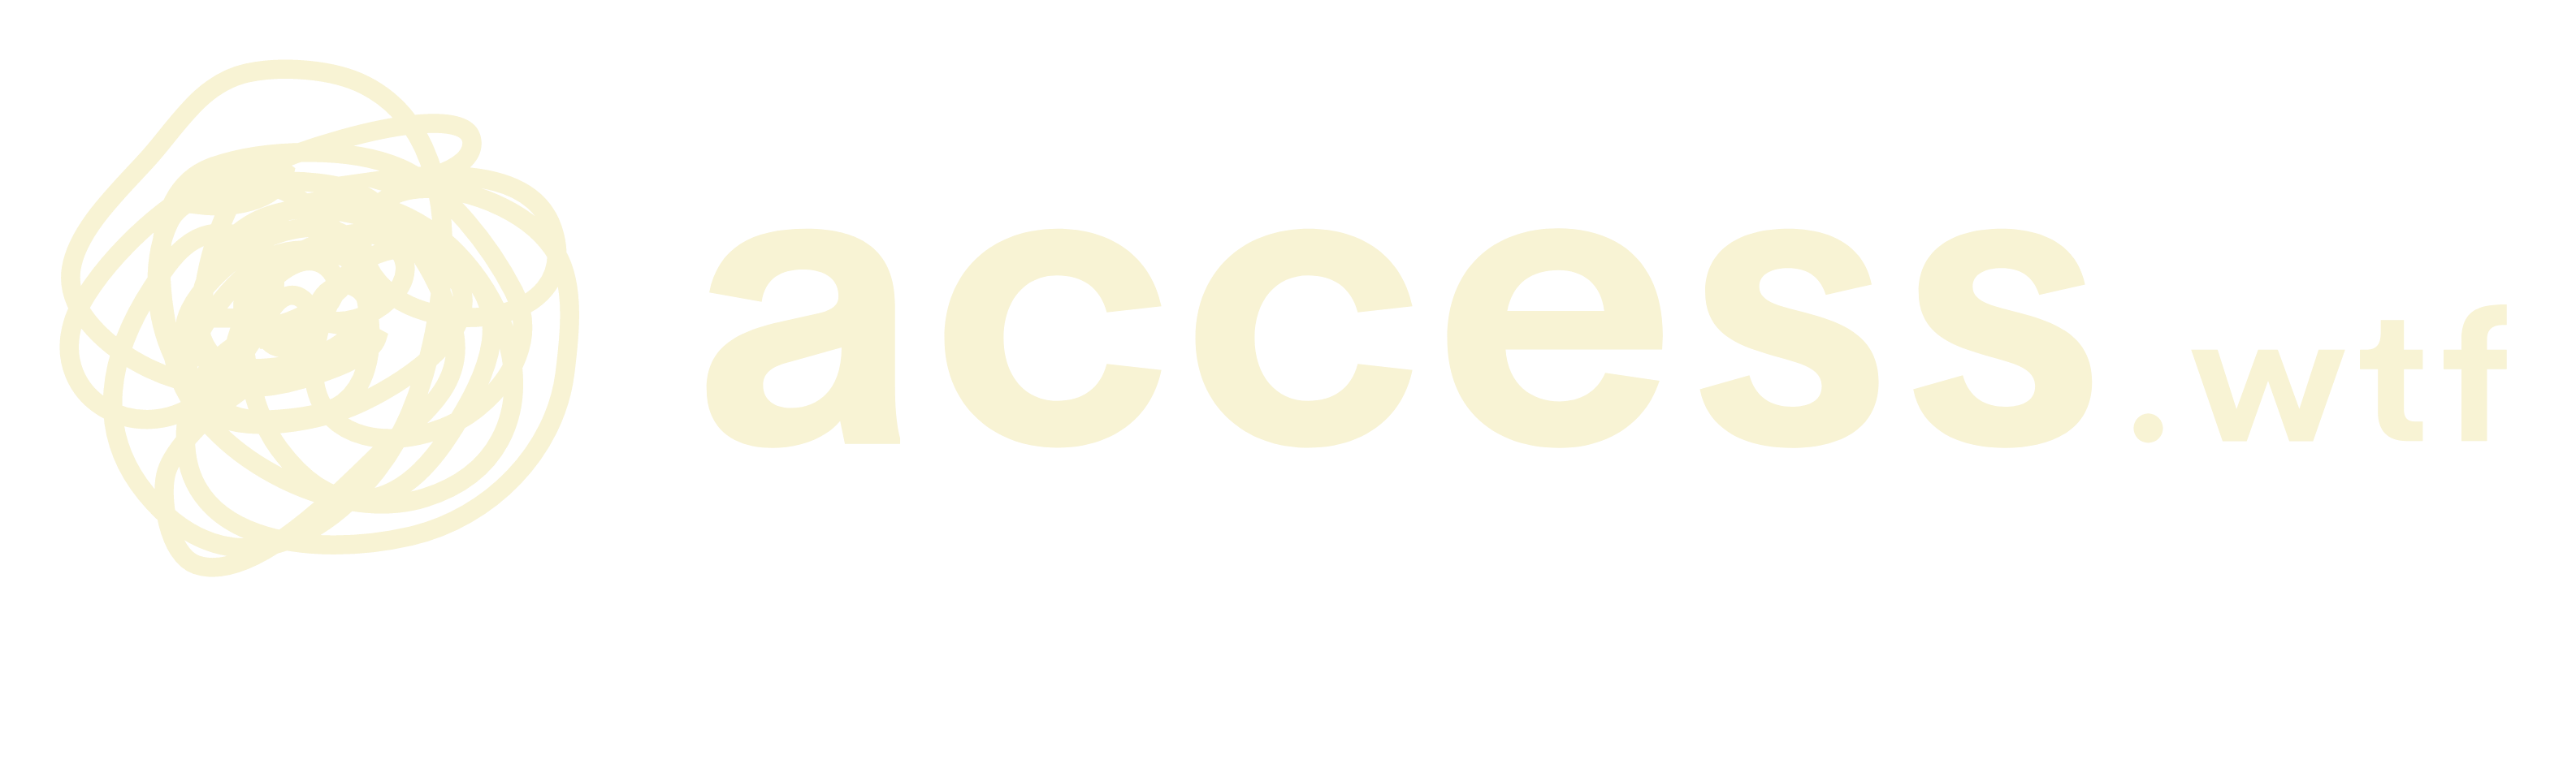 Access Logo